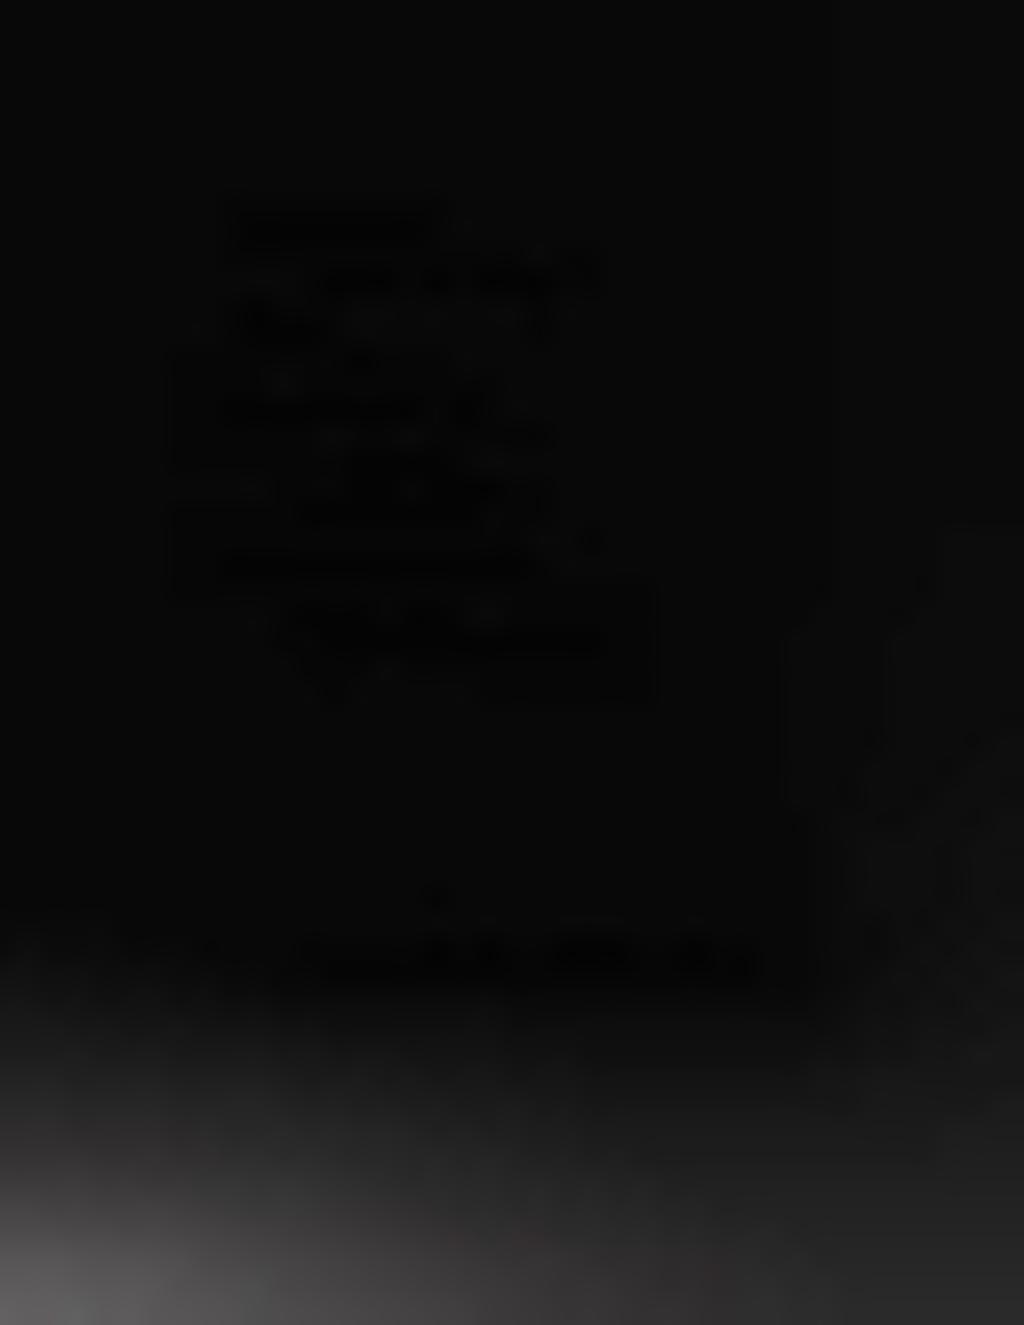 tìtedìồál M ẩ M n g ) Irlaïfââ CHỈ ĐẠO BIÊN SOẠN: Vụ Khoa học và Đào tạo, Bộ Y tế CHỦ BIÊN: GS.TS. Trần Quỵ NHỮNG NGƯỜI BIÊN SOẠN: GS.TS. Trần Quỵ PGS.TS. Nguyễn Tiến Dũng CN.